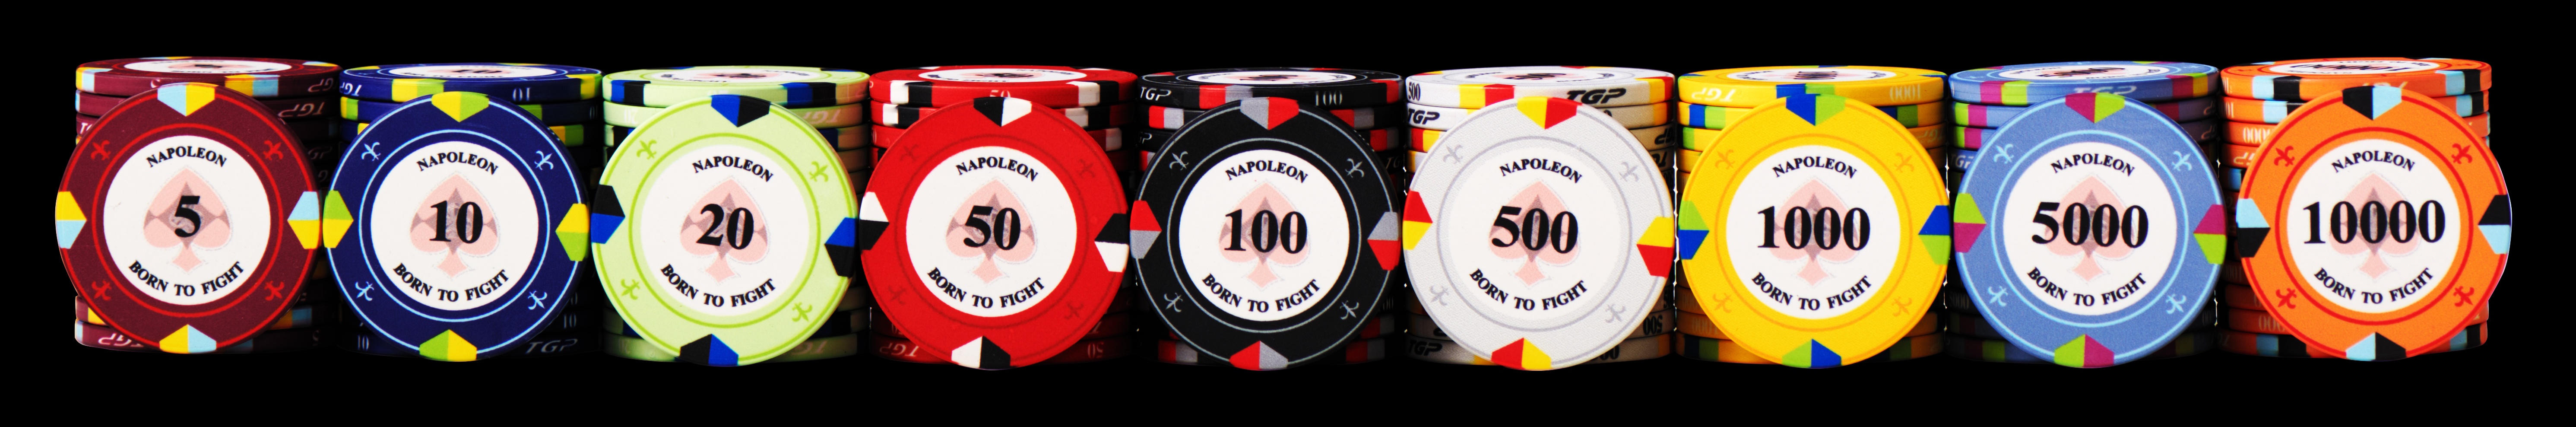 Chip Poker Ceramic Napoleon được thiết kế đơn giản sang trọng by TGP 